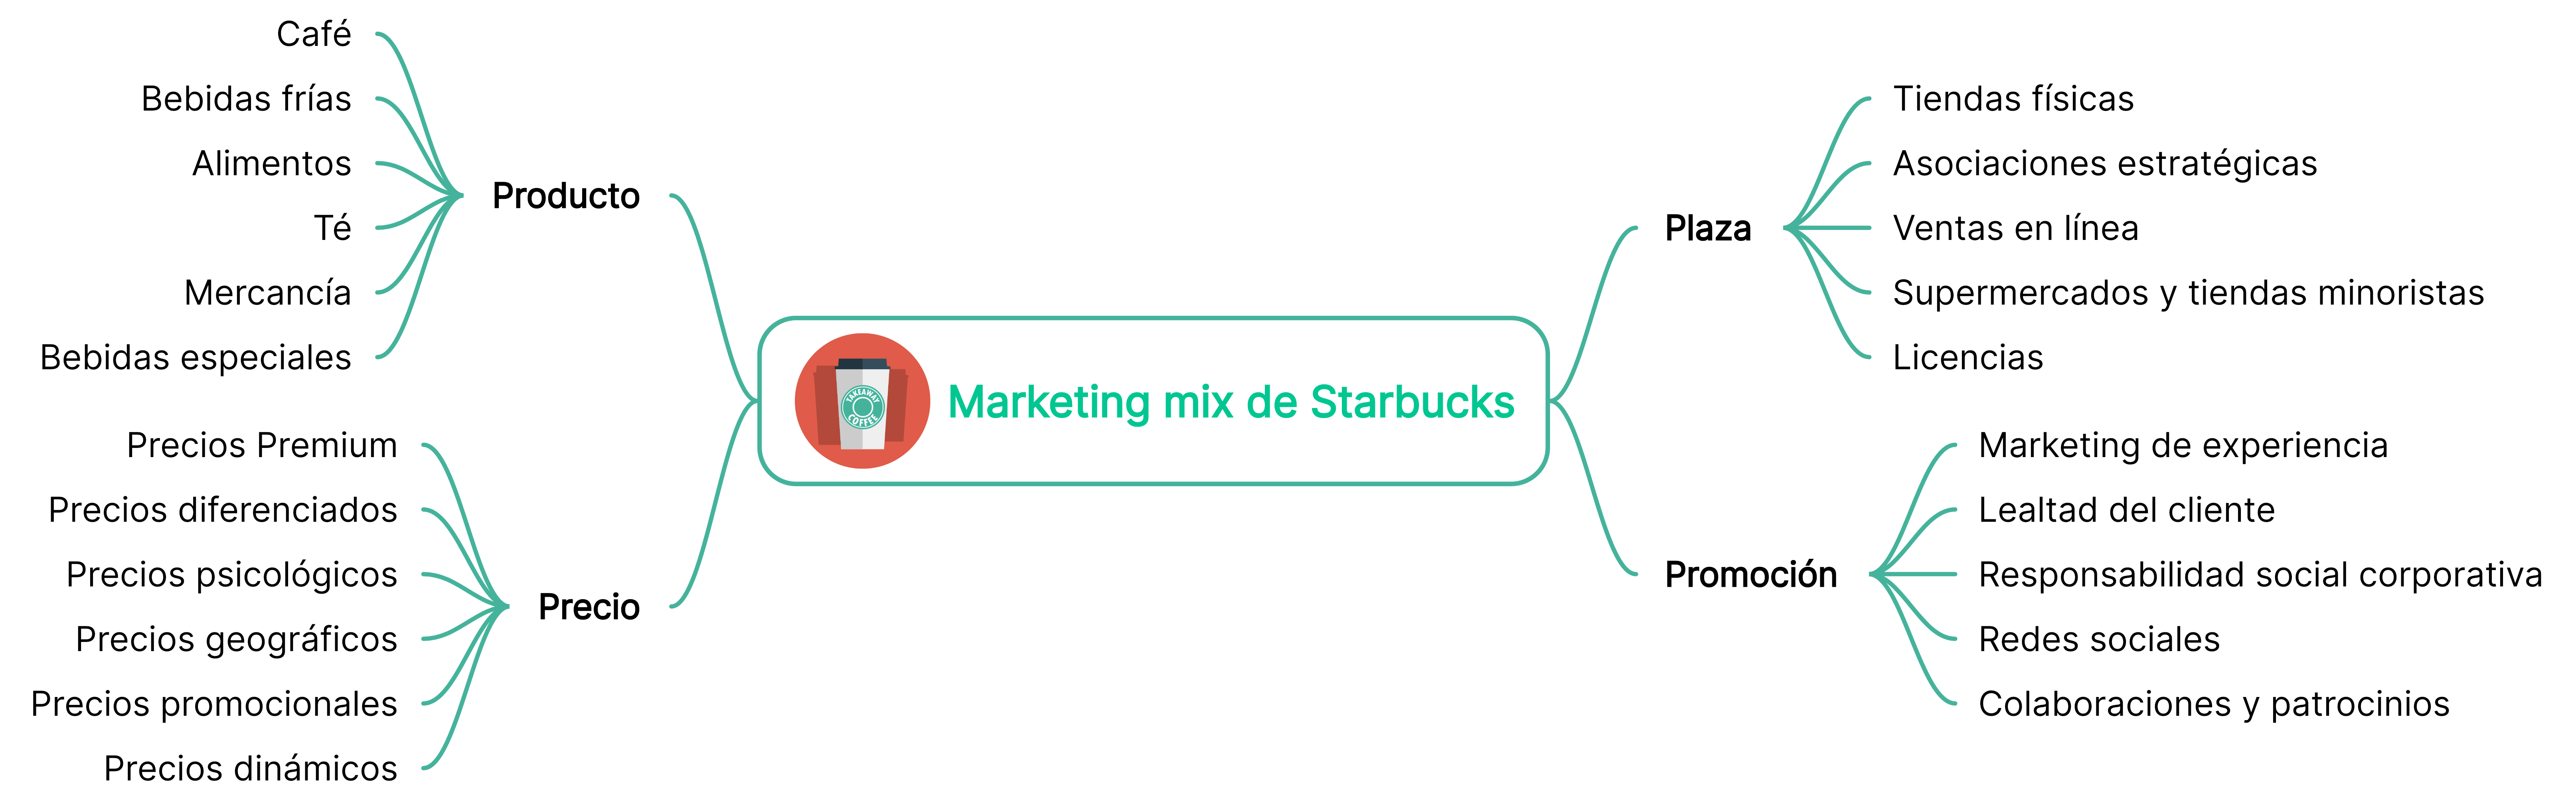 Mapa mental del marketing mix de Starbucks